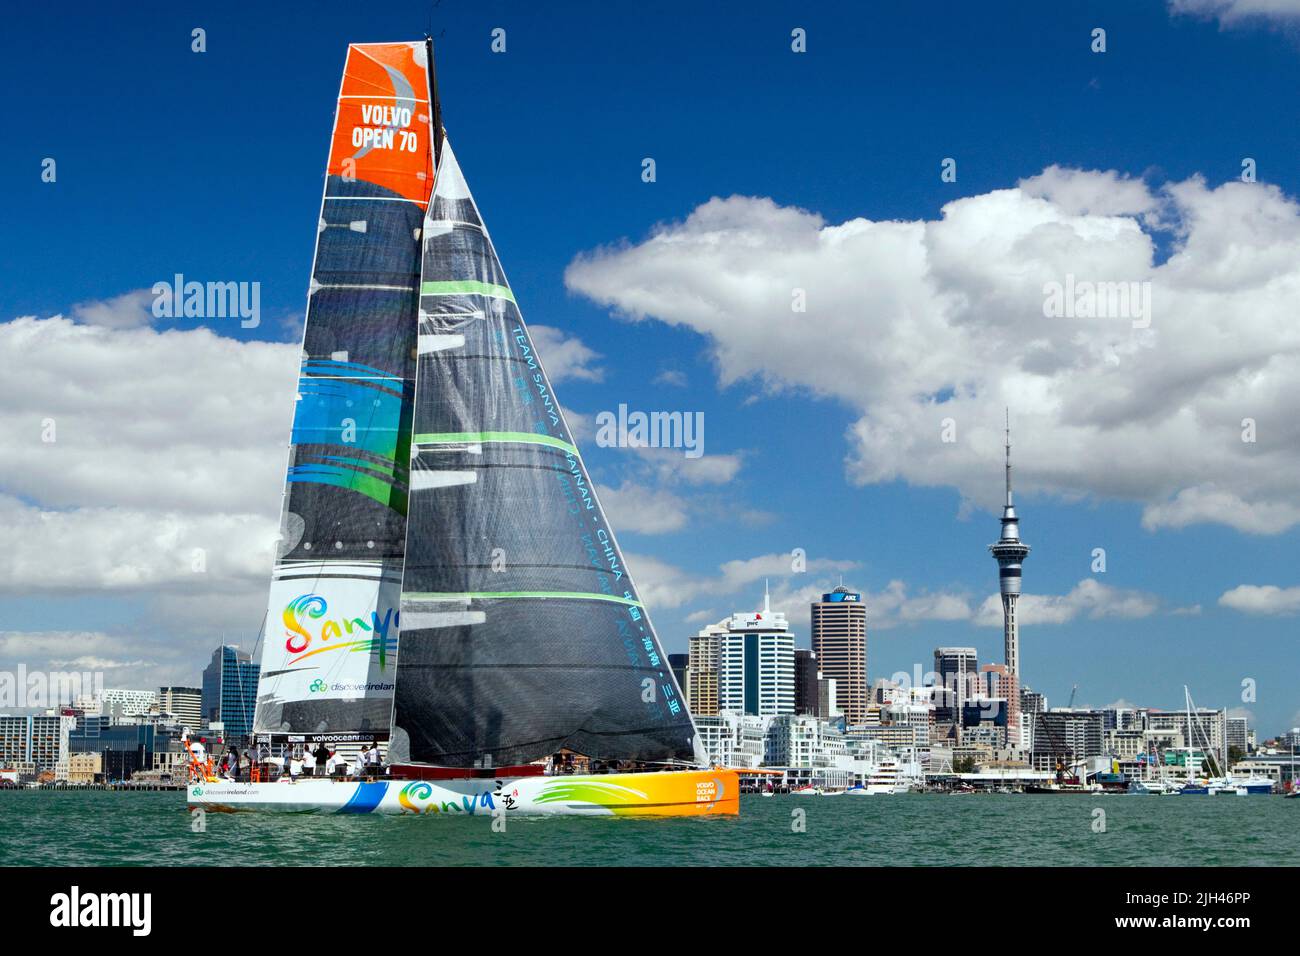 Team Sanya überquert die Linie und gewinnt das Pro-am-Rennen im Rahmen der Aktivitäten im Hafen des Volvo Ocean Race, Auckland, Neuseeland, Stockfoto